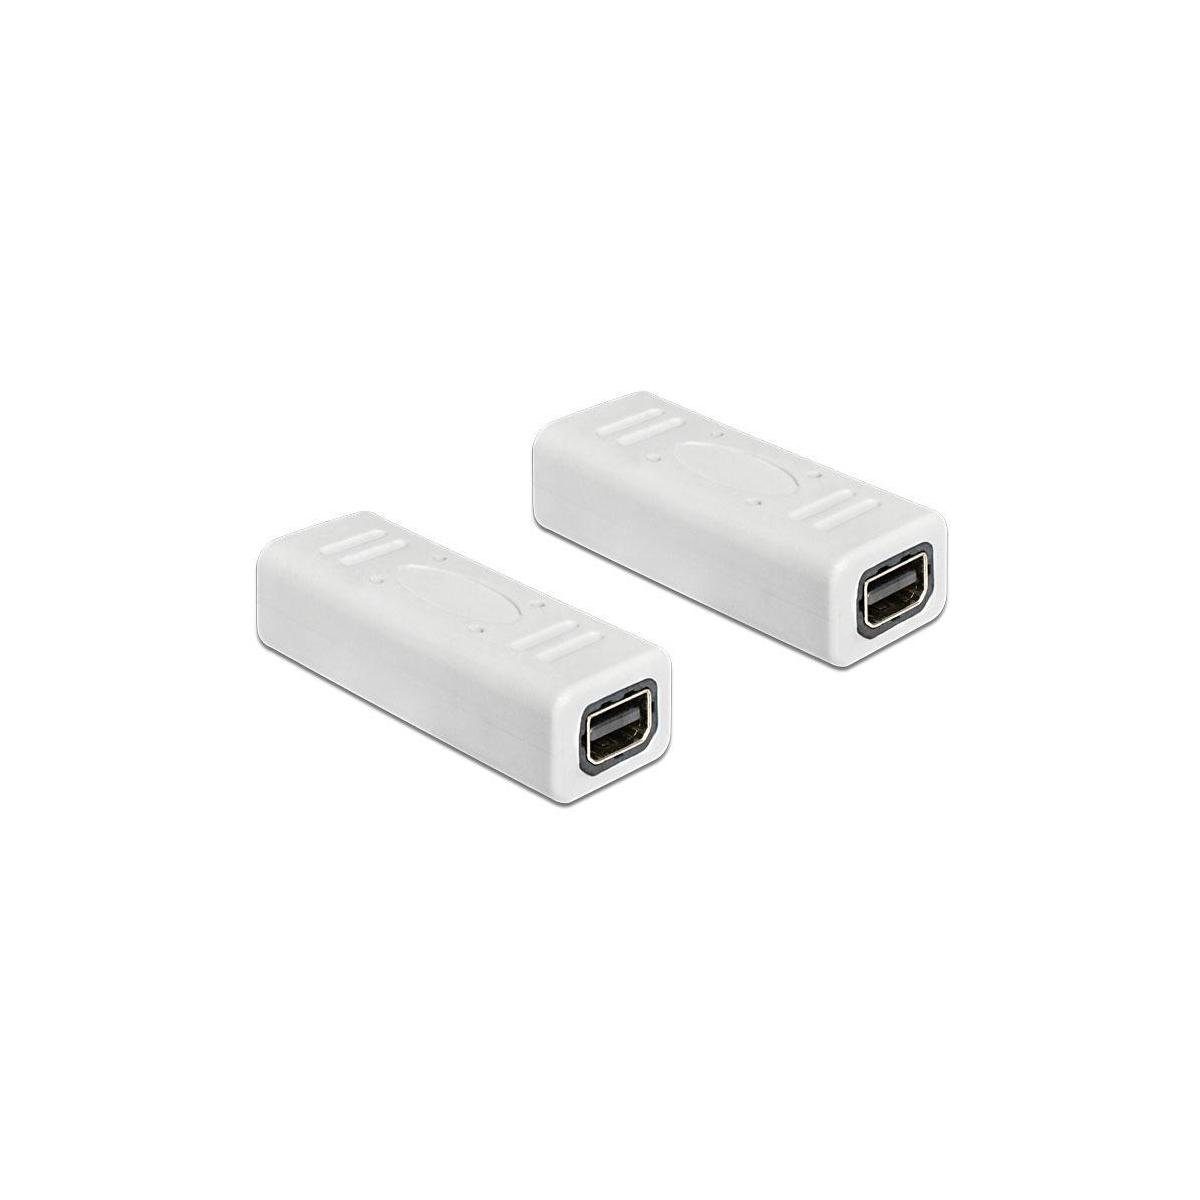 Delock 65450 - Adapter mini DisplayPort 1.2 Buchse zu Buchse... Computer-Kabel, Display Port, DisplayPort